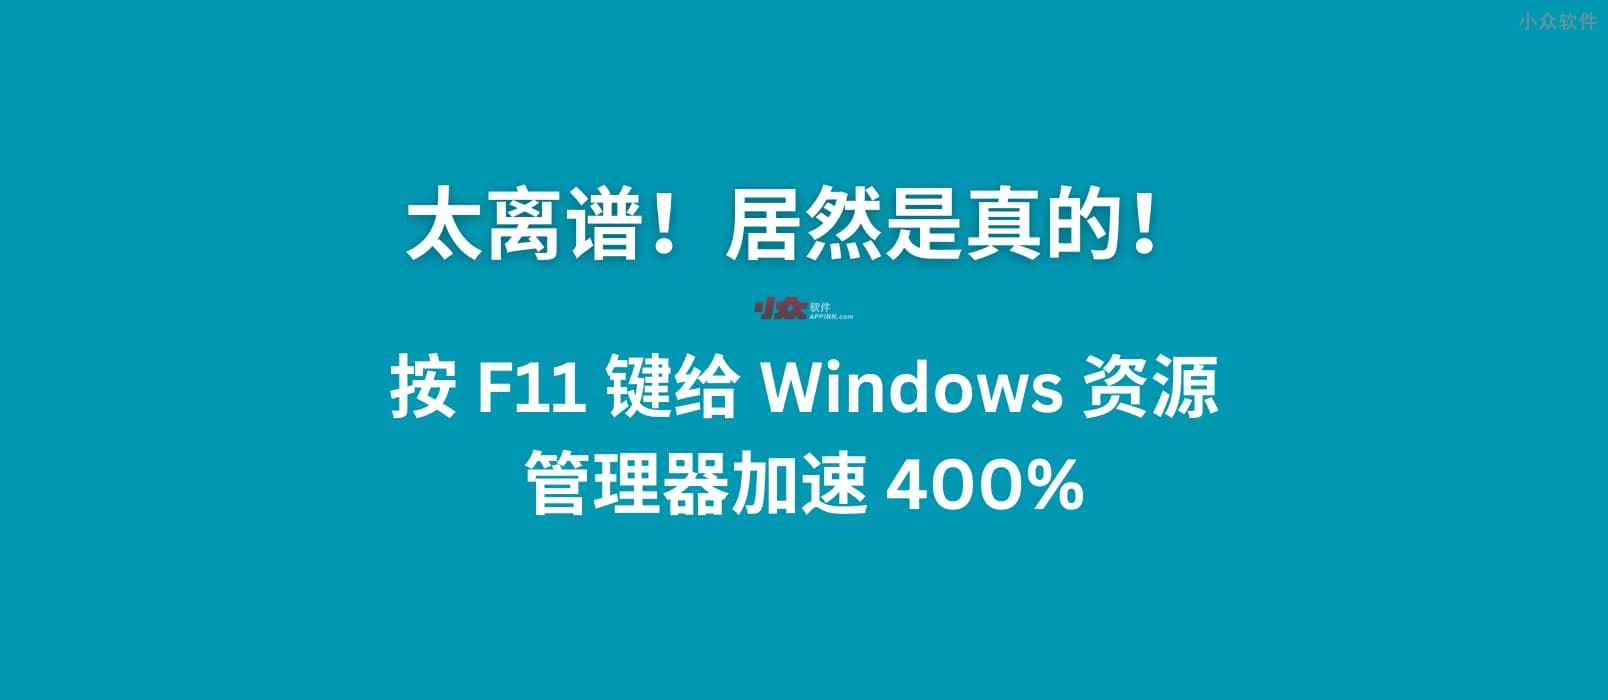 太离谱！按 F11 给 Windows 10/11 资源管理器加速 400%，居然是真的 1